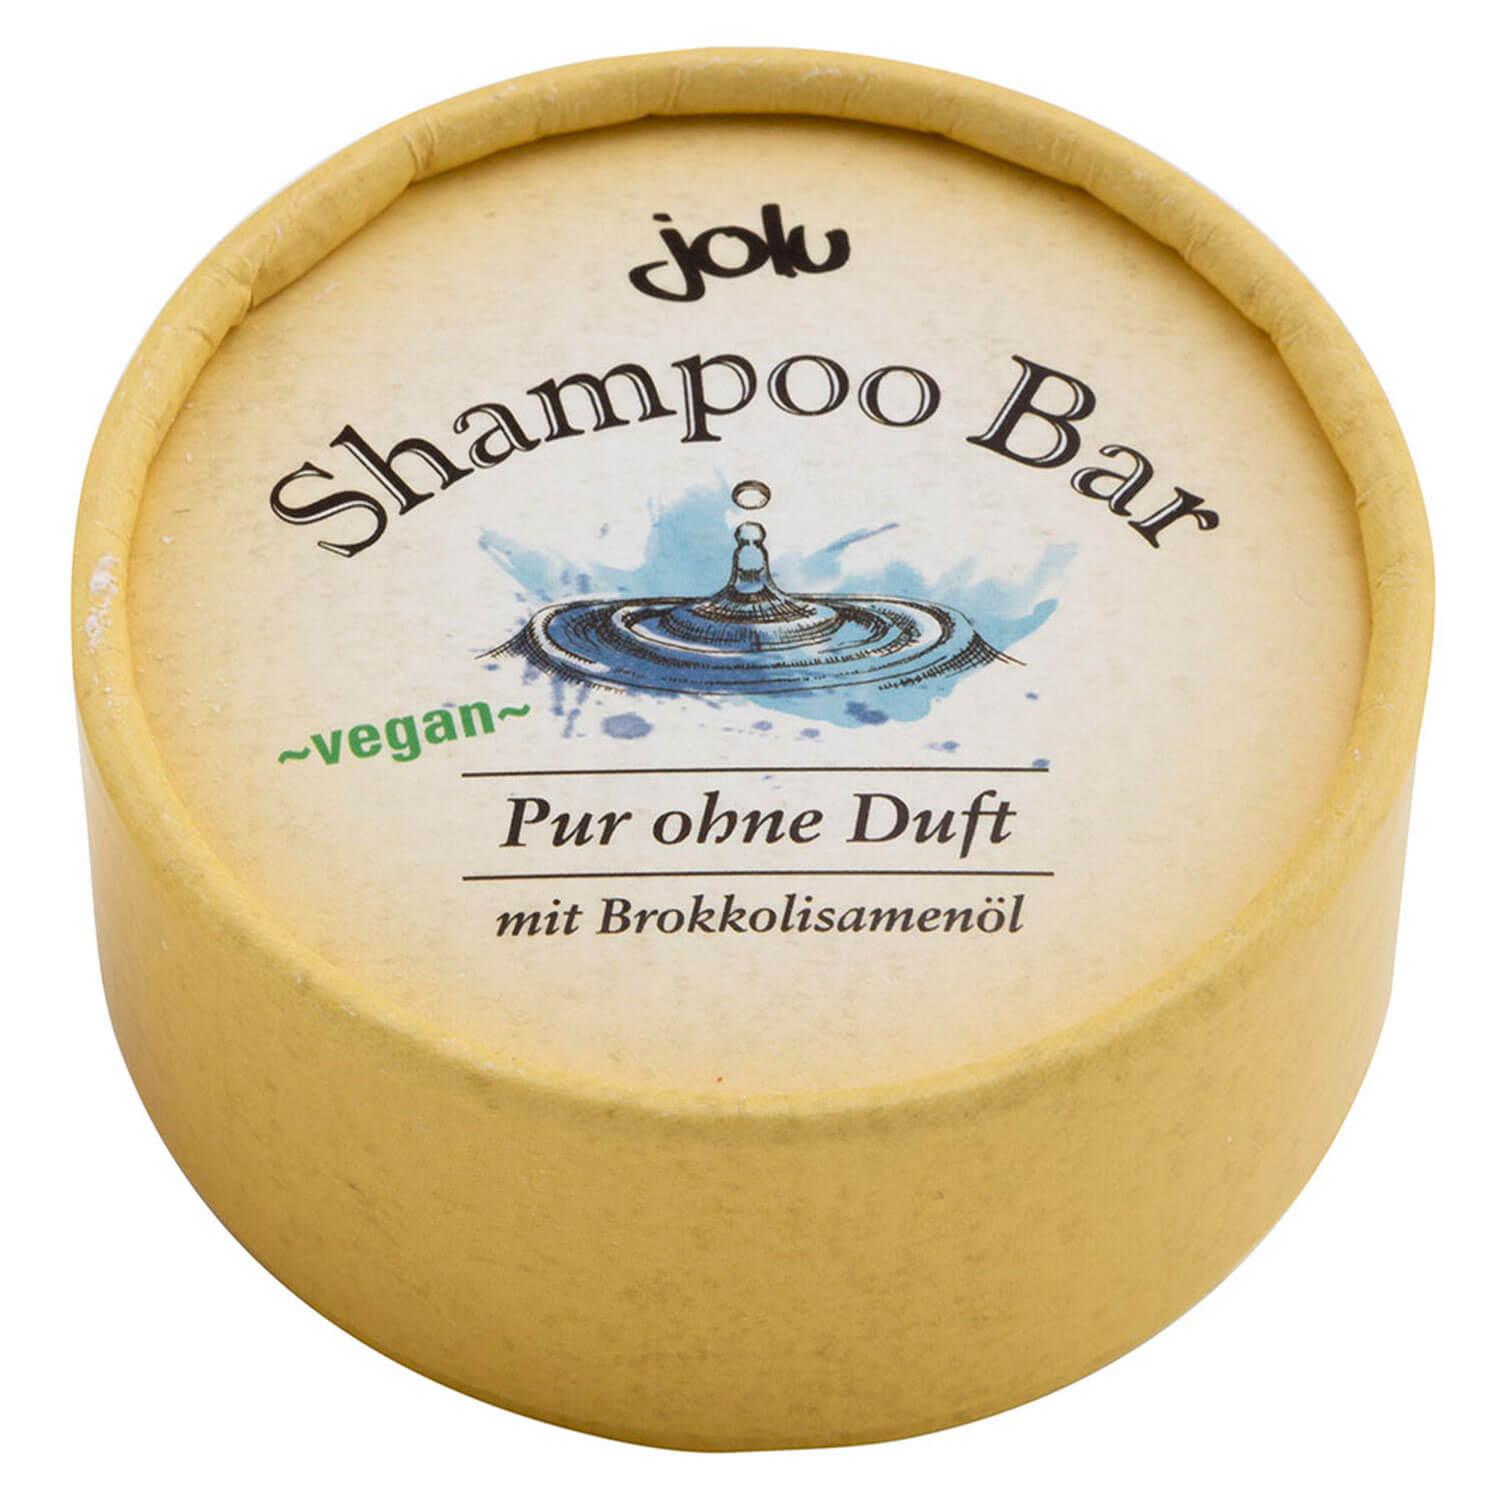 jolu - Shampoo Bar Pur